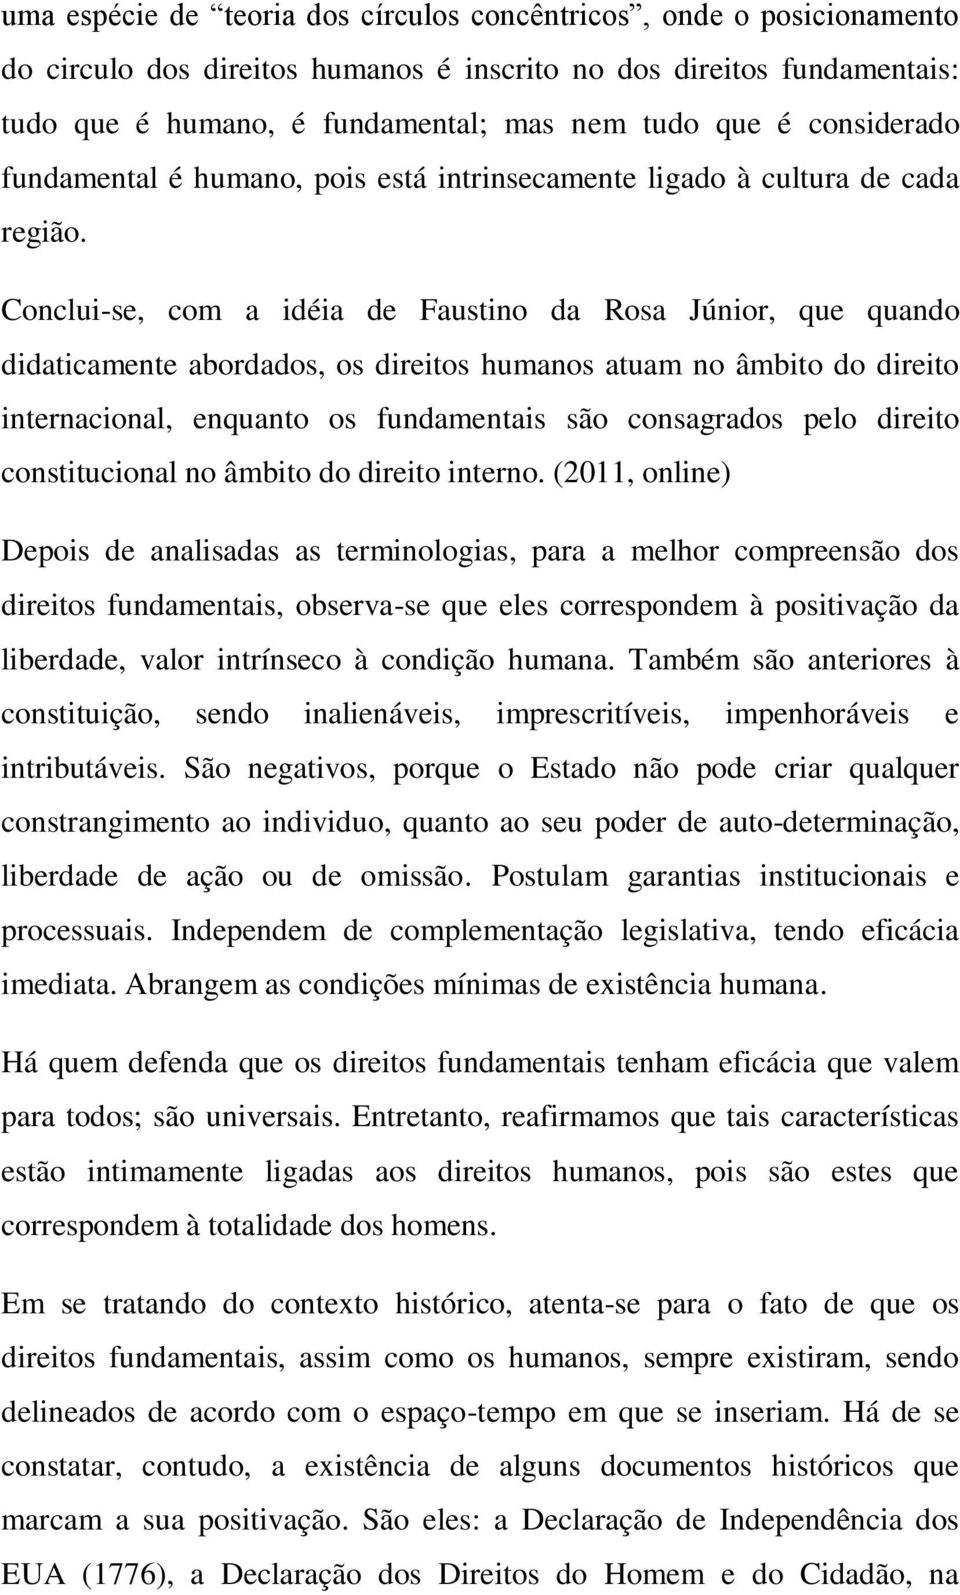 Conclui-se, com a idéia de Faustino da Rosa Júnior, que quando didaticamente abordados, os direitos humanos atuam no âmbito do direito internacional, enquanto os fundamentais são consagrados pelo